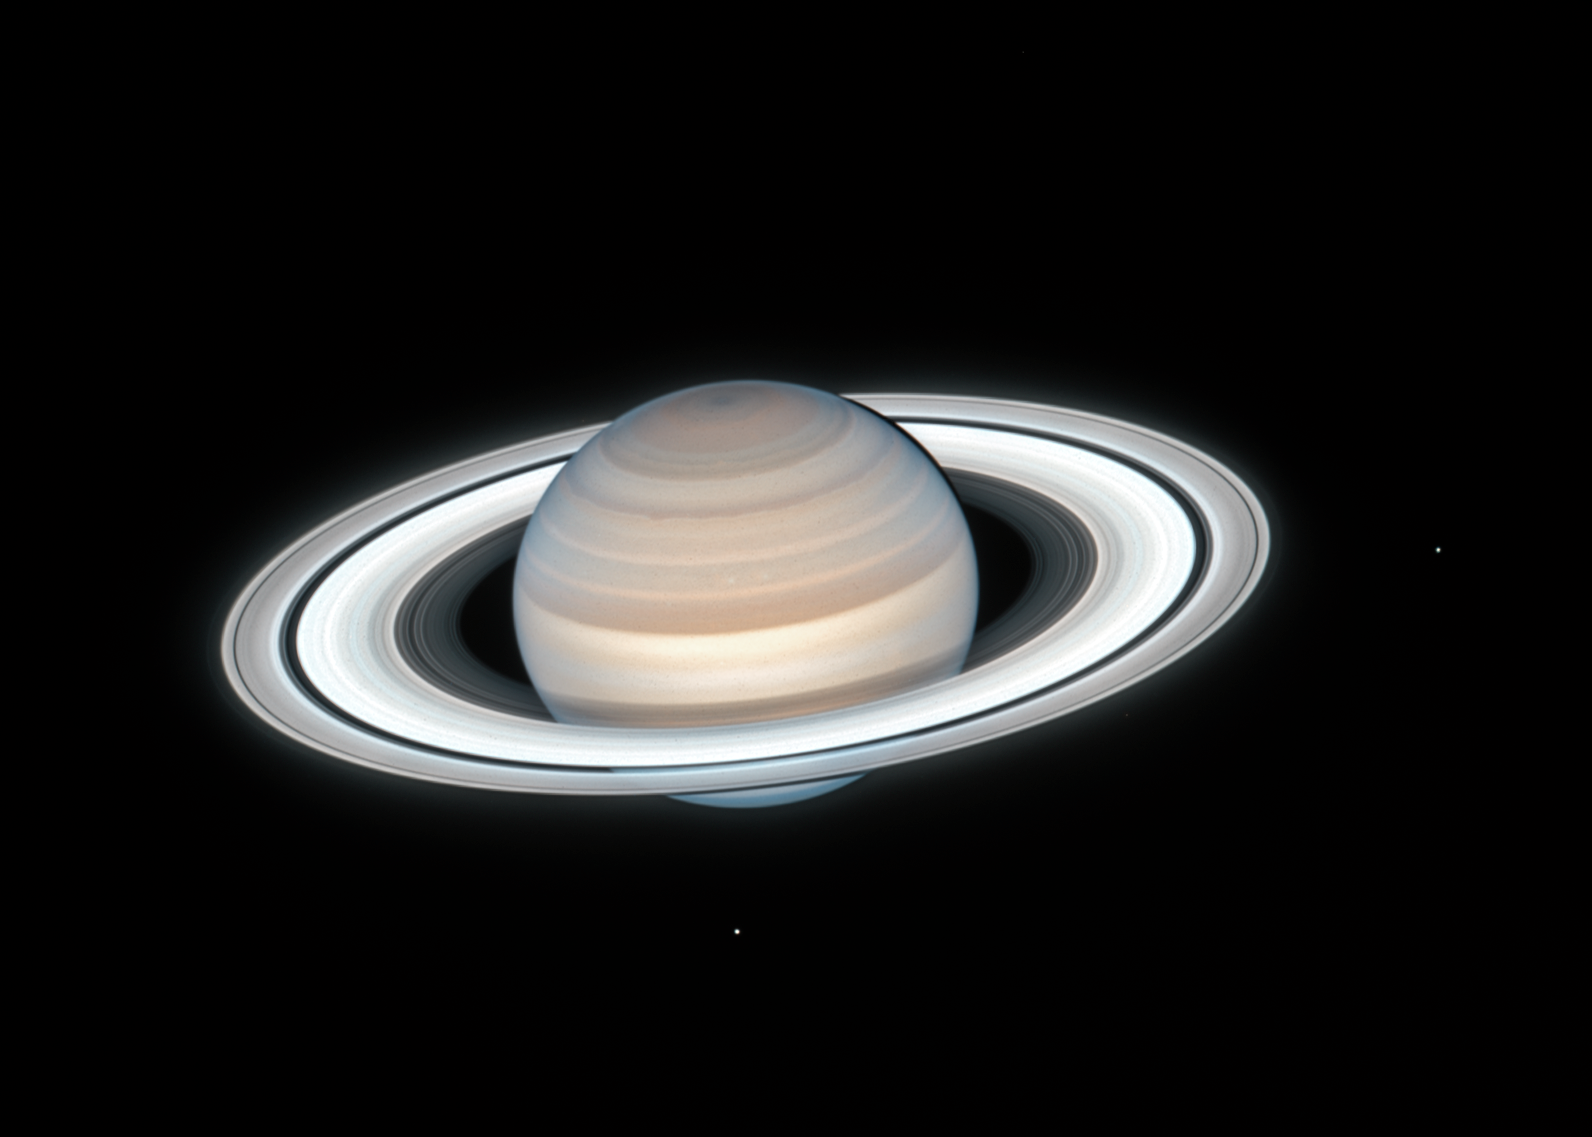 На цьому знімку чітко видно два крижані місяця Сатурна: Мімас справа і Енцелад внизу.